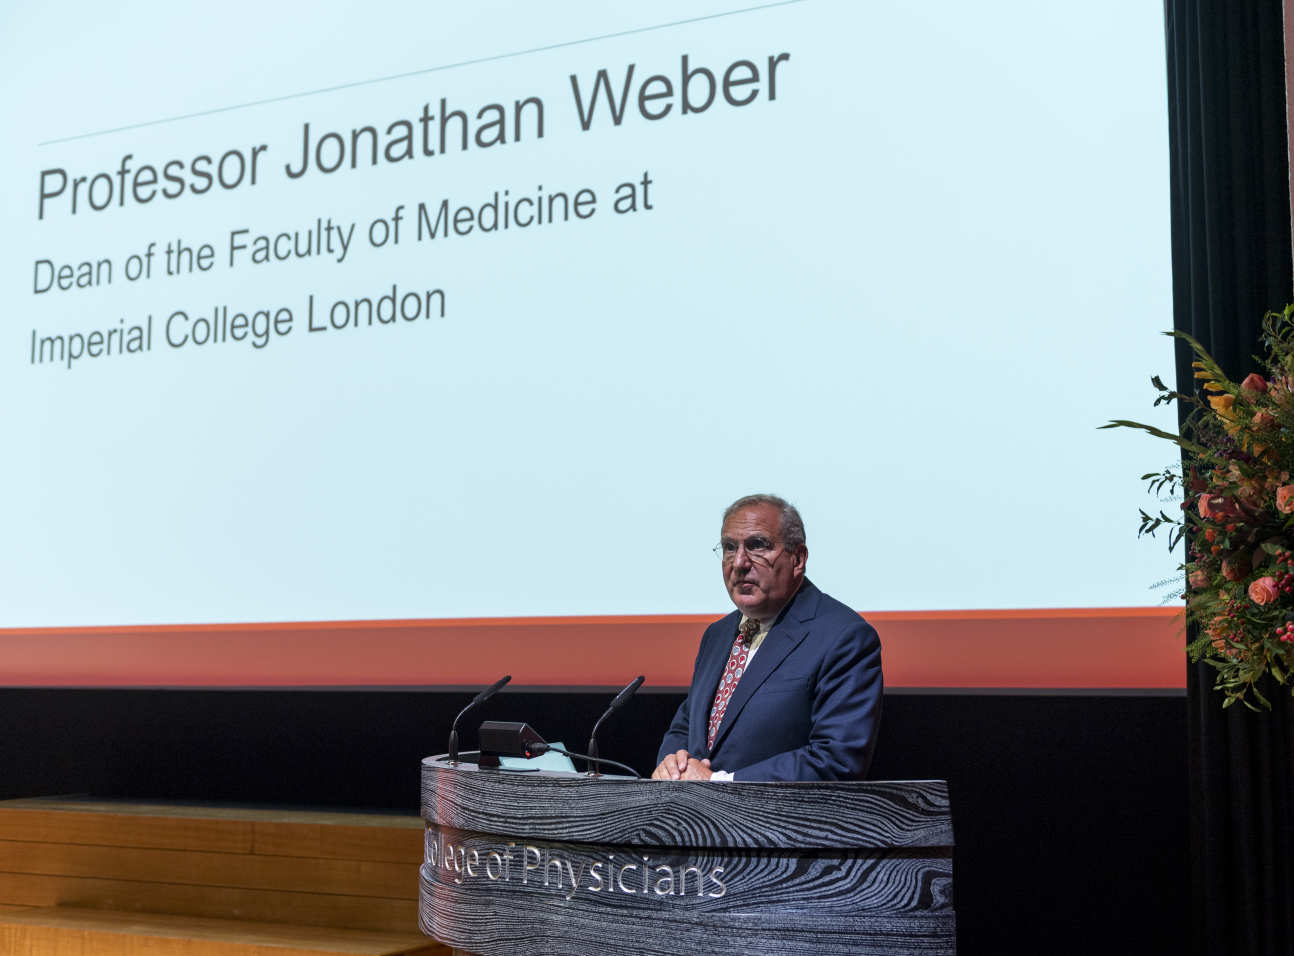 Professor Jonathan Weber